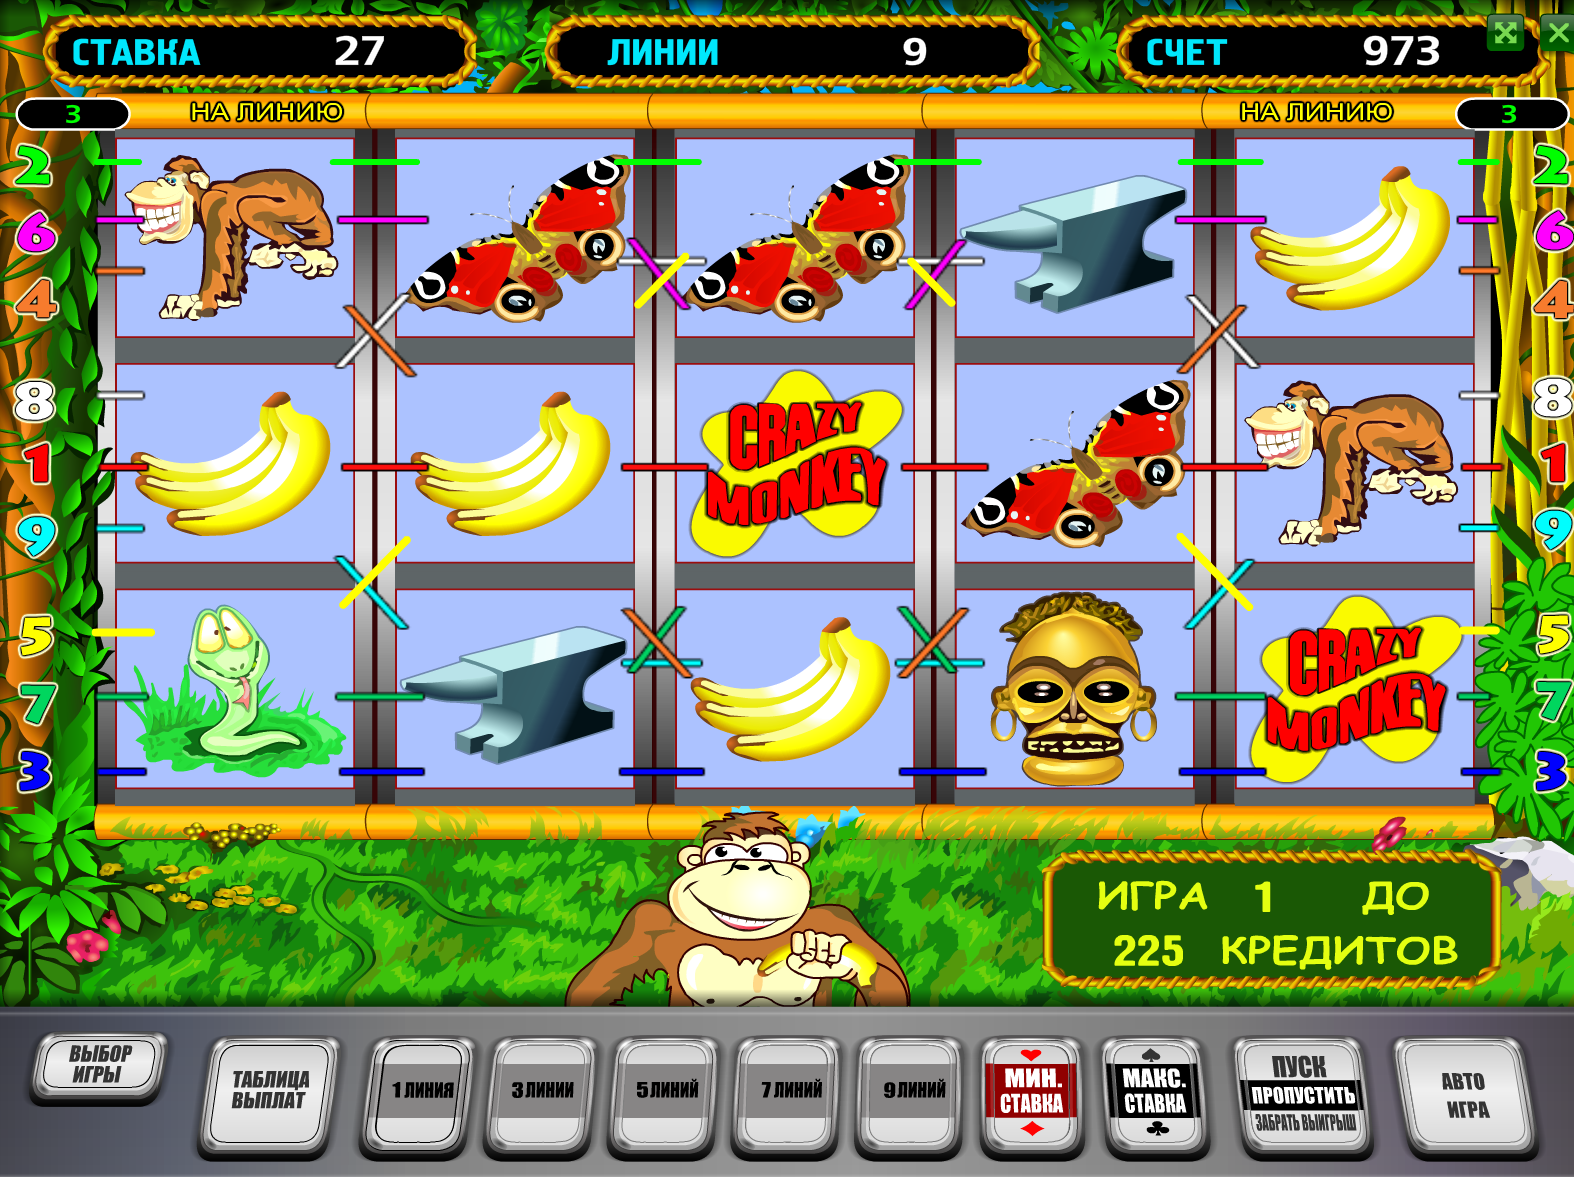 играть в игры онлайн бесплатно игровые автоматы обезьяны